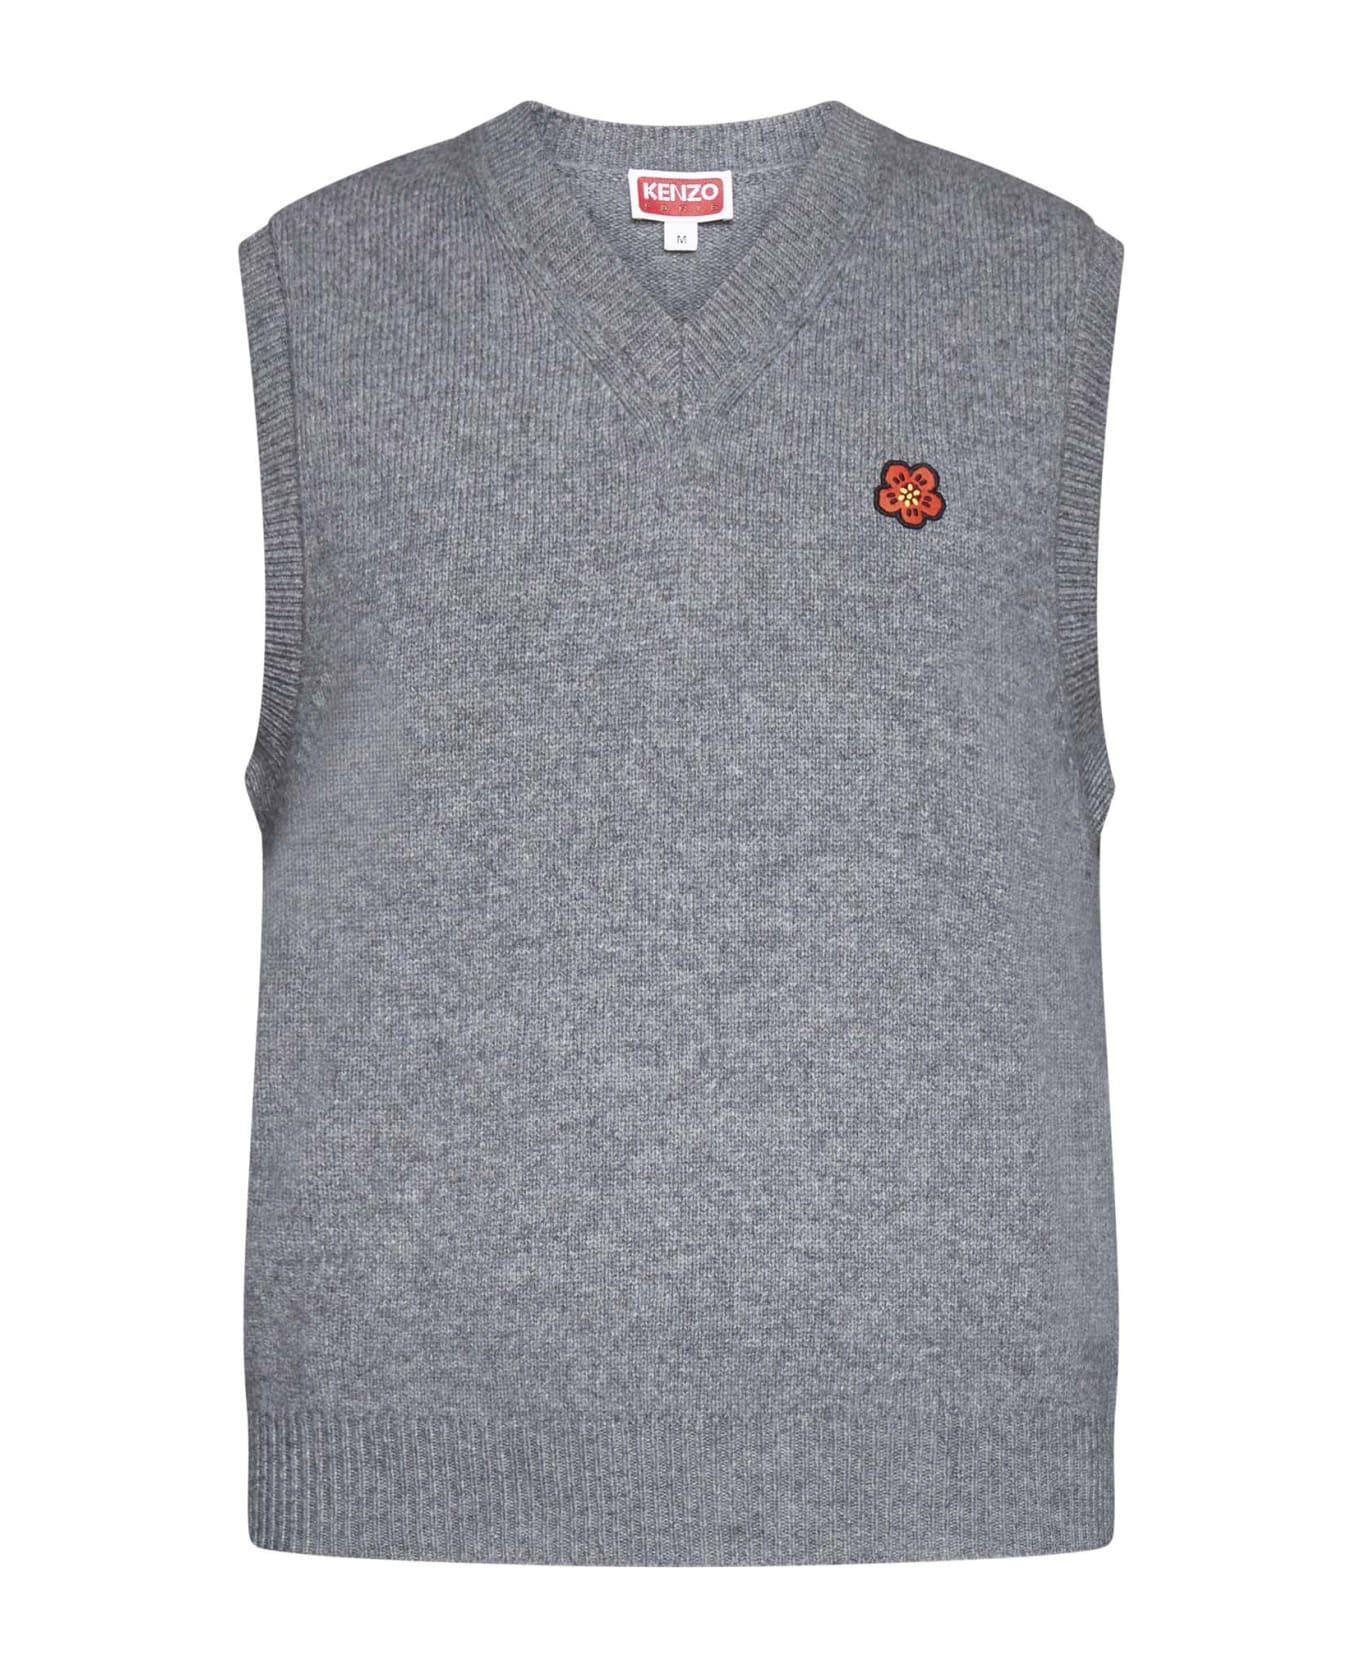 Kenzo Sweater - Pearl grey